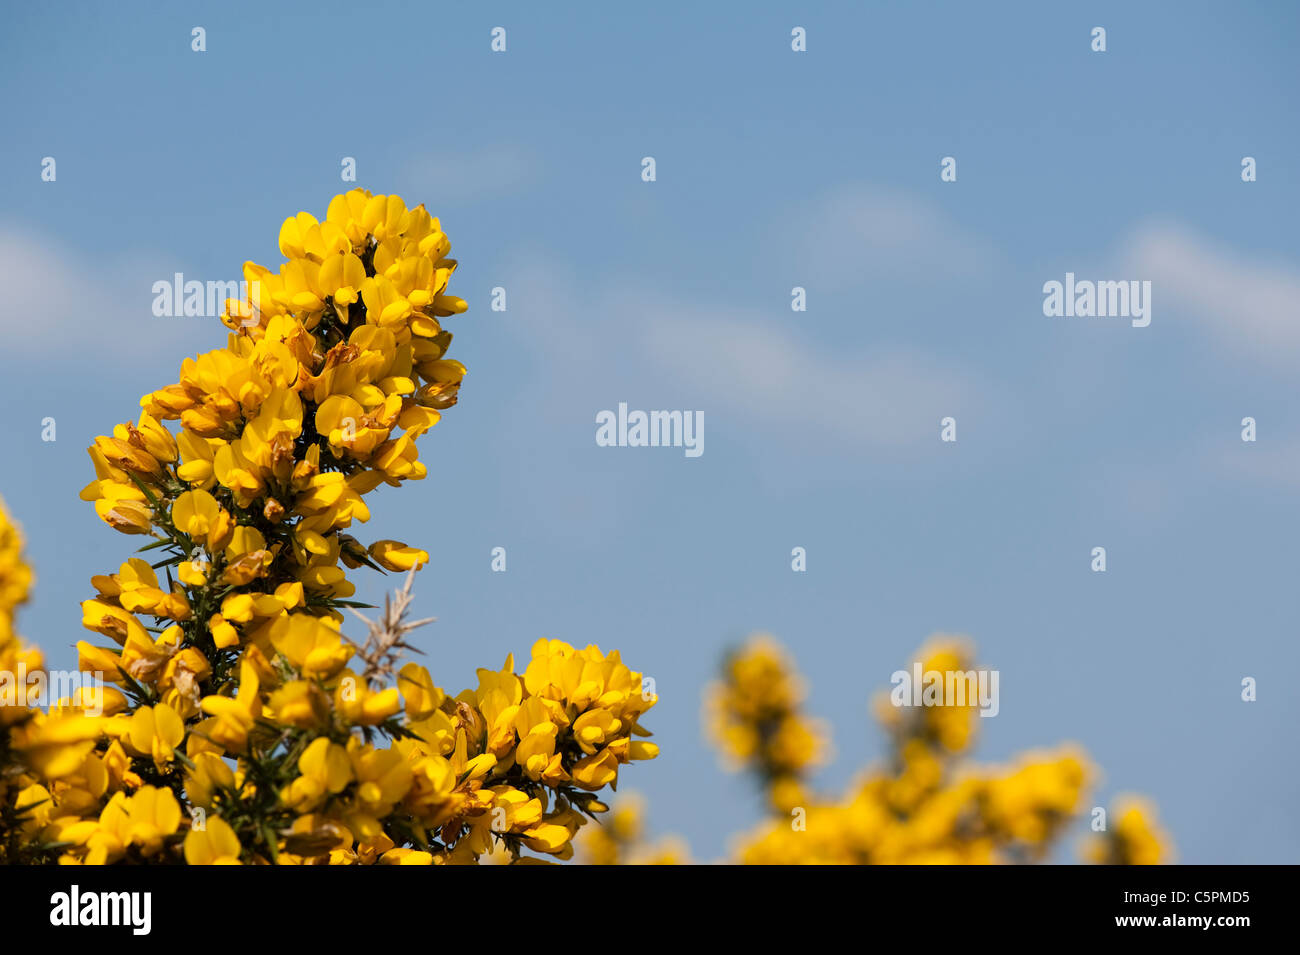 L'ajonc commun, Ulex europaeus, en fleurs Banque D'Images